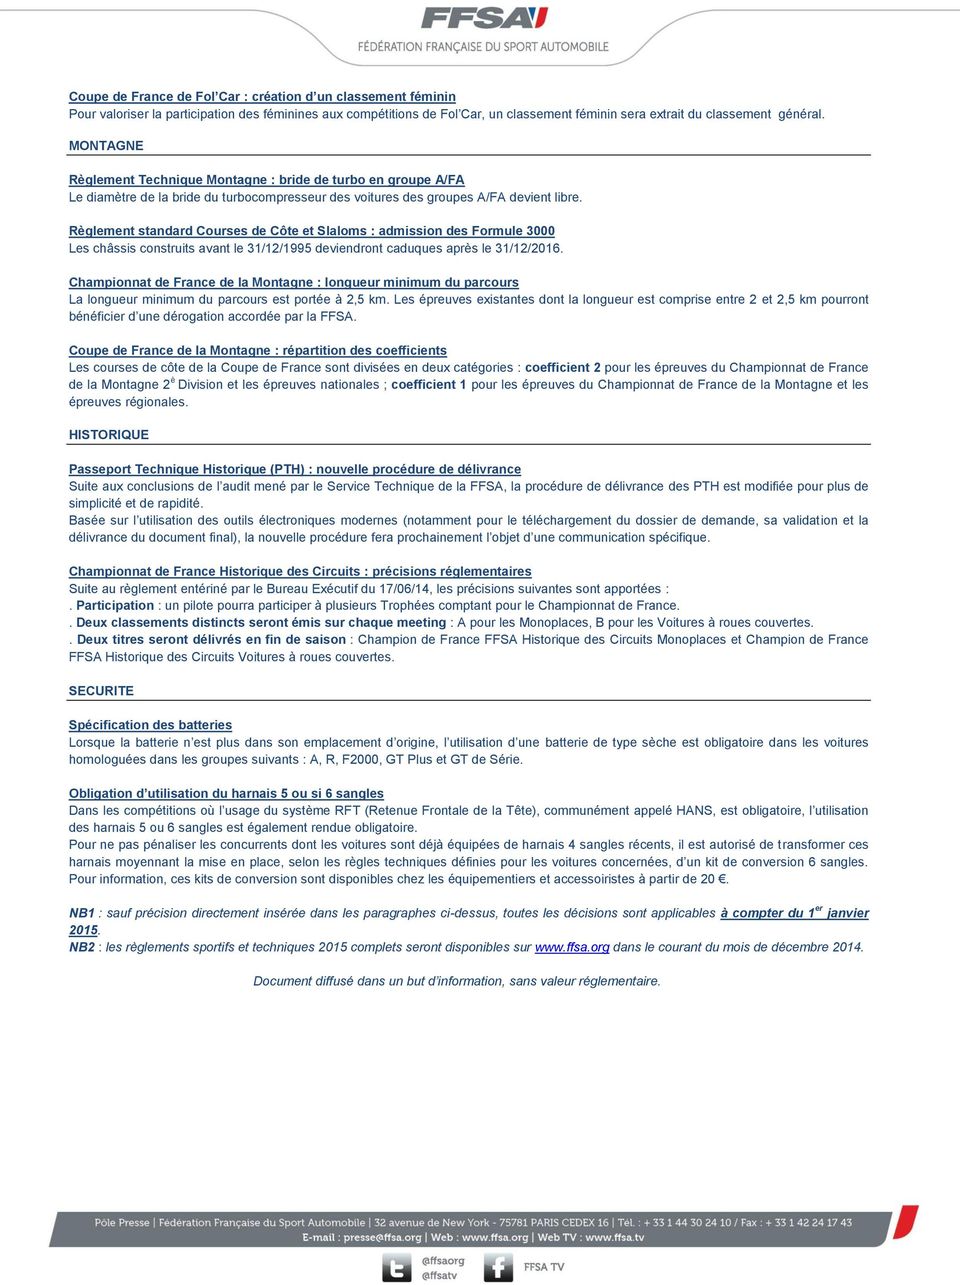 Règlement standard Courses de Côte et Slaloms : admission des Formule 3000 Les châssis construits avant le 31/12/1995 deviendront caduques après le 31/12/2016.